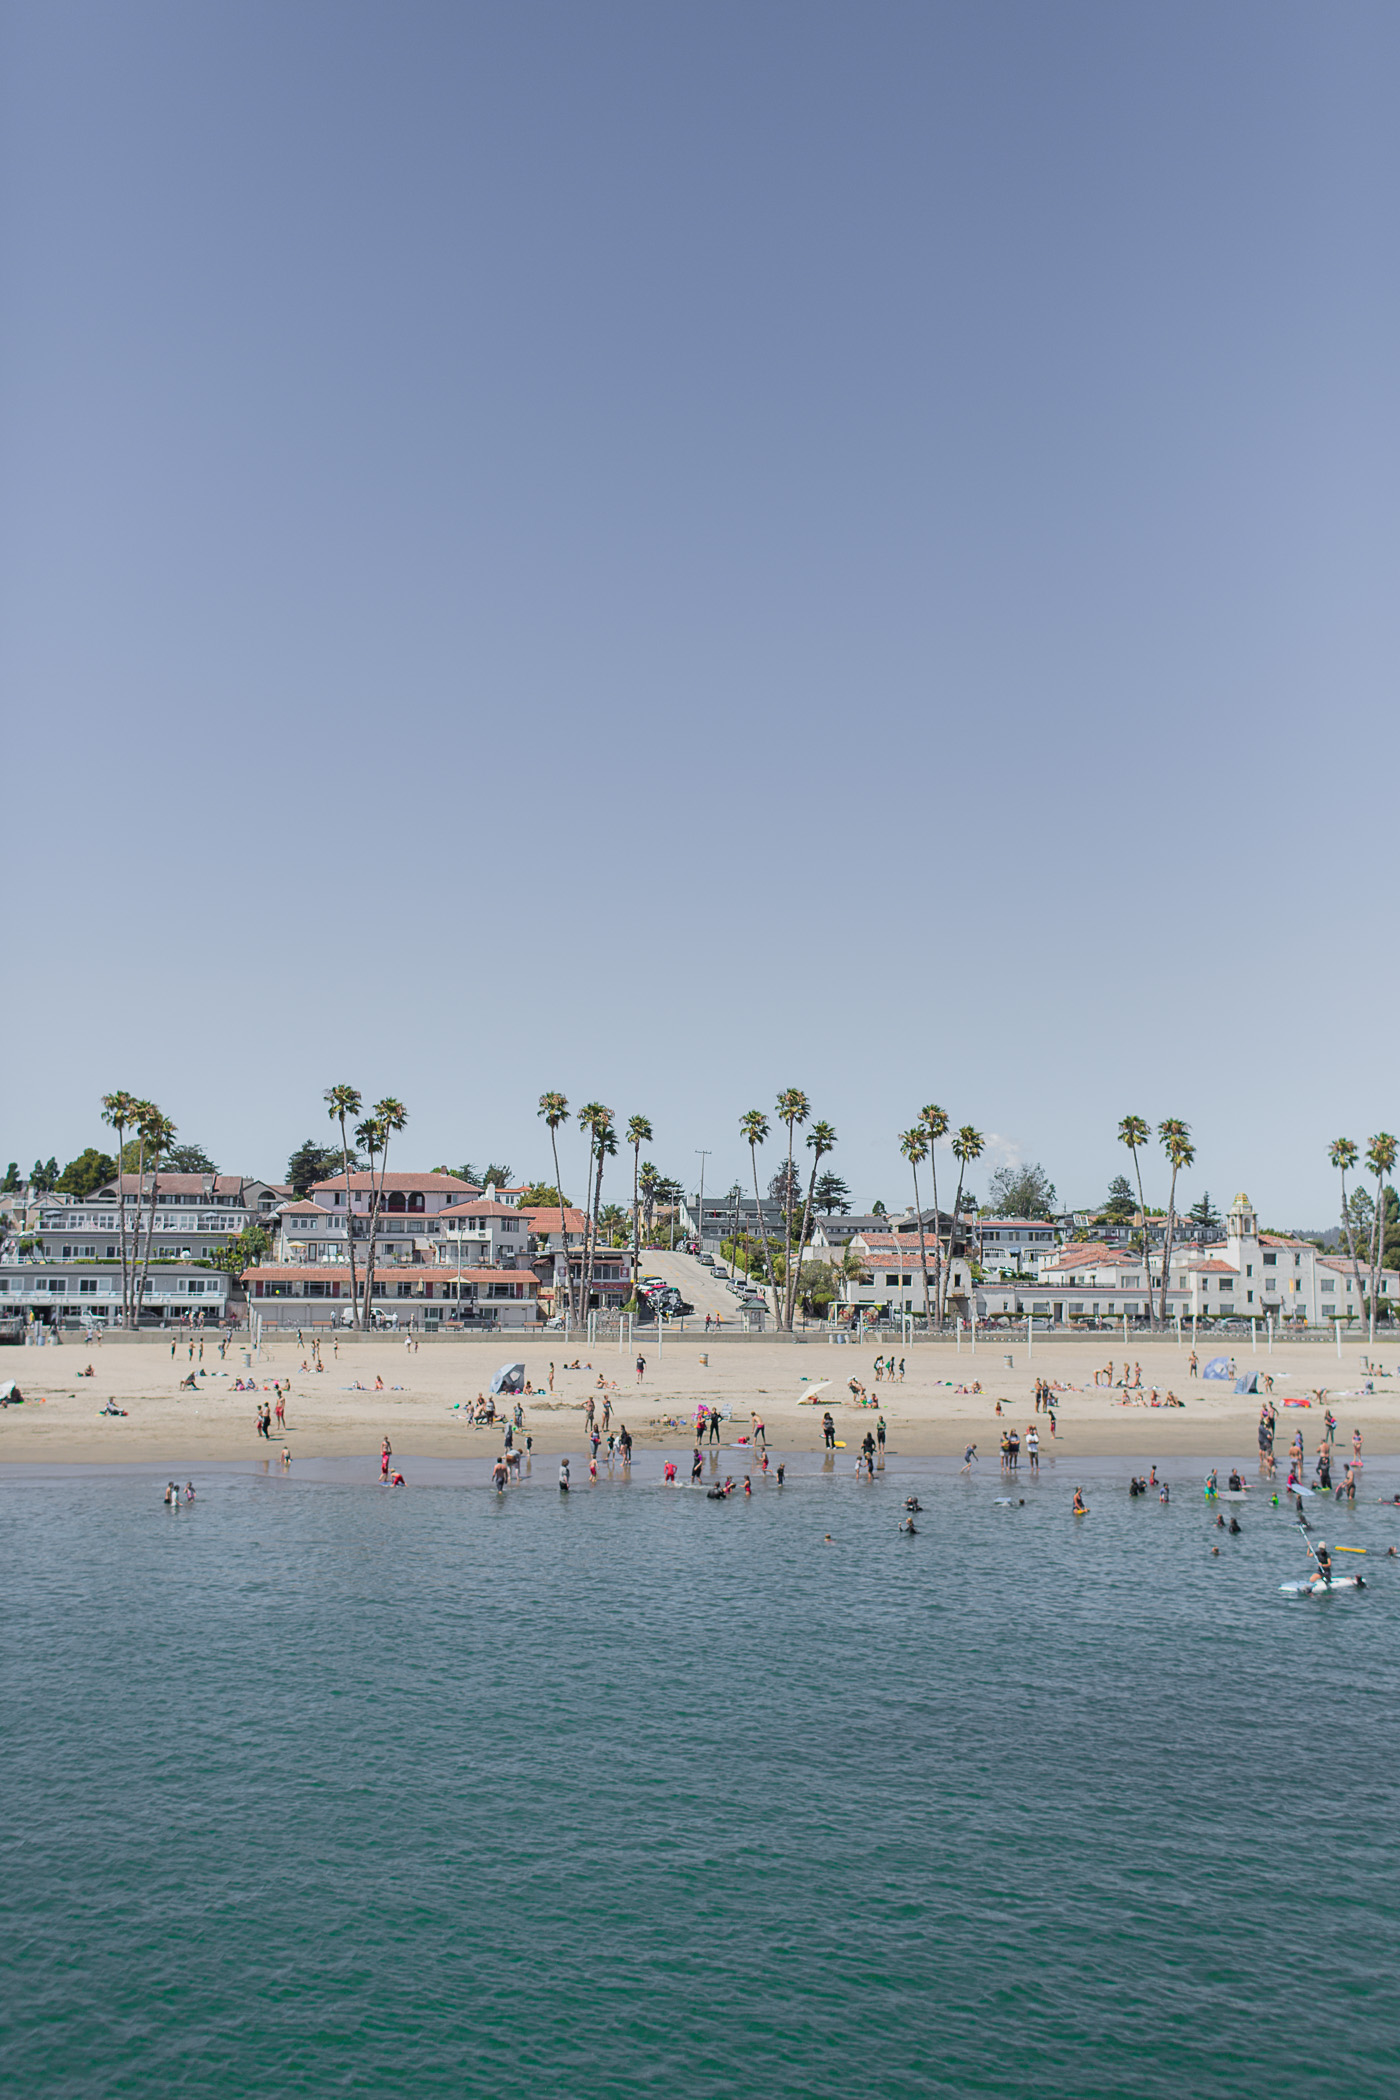 Santa Cruz Beach Boardwalk in Santa Cruz, California